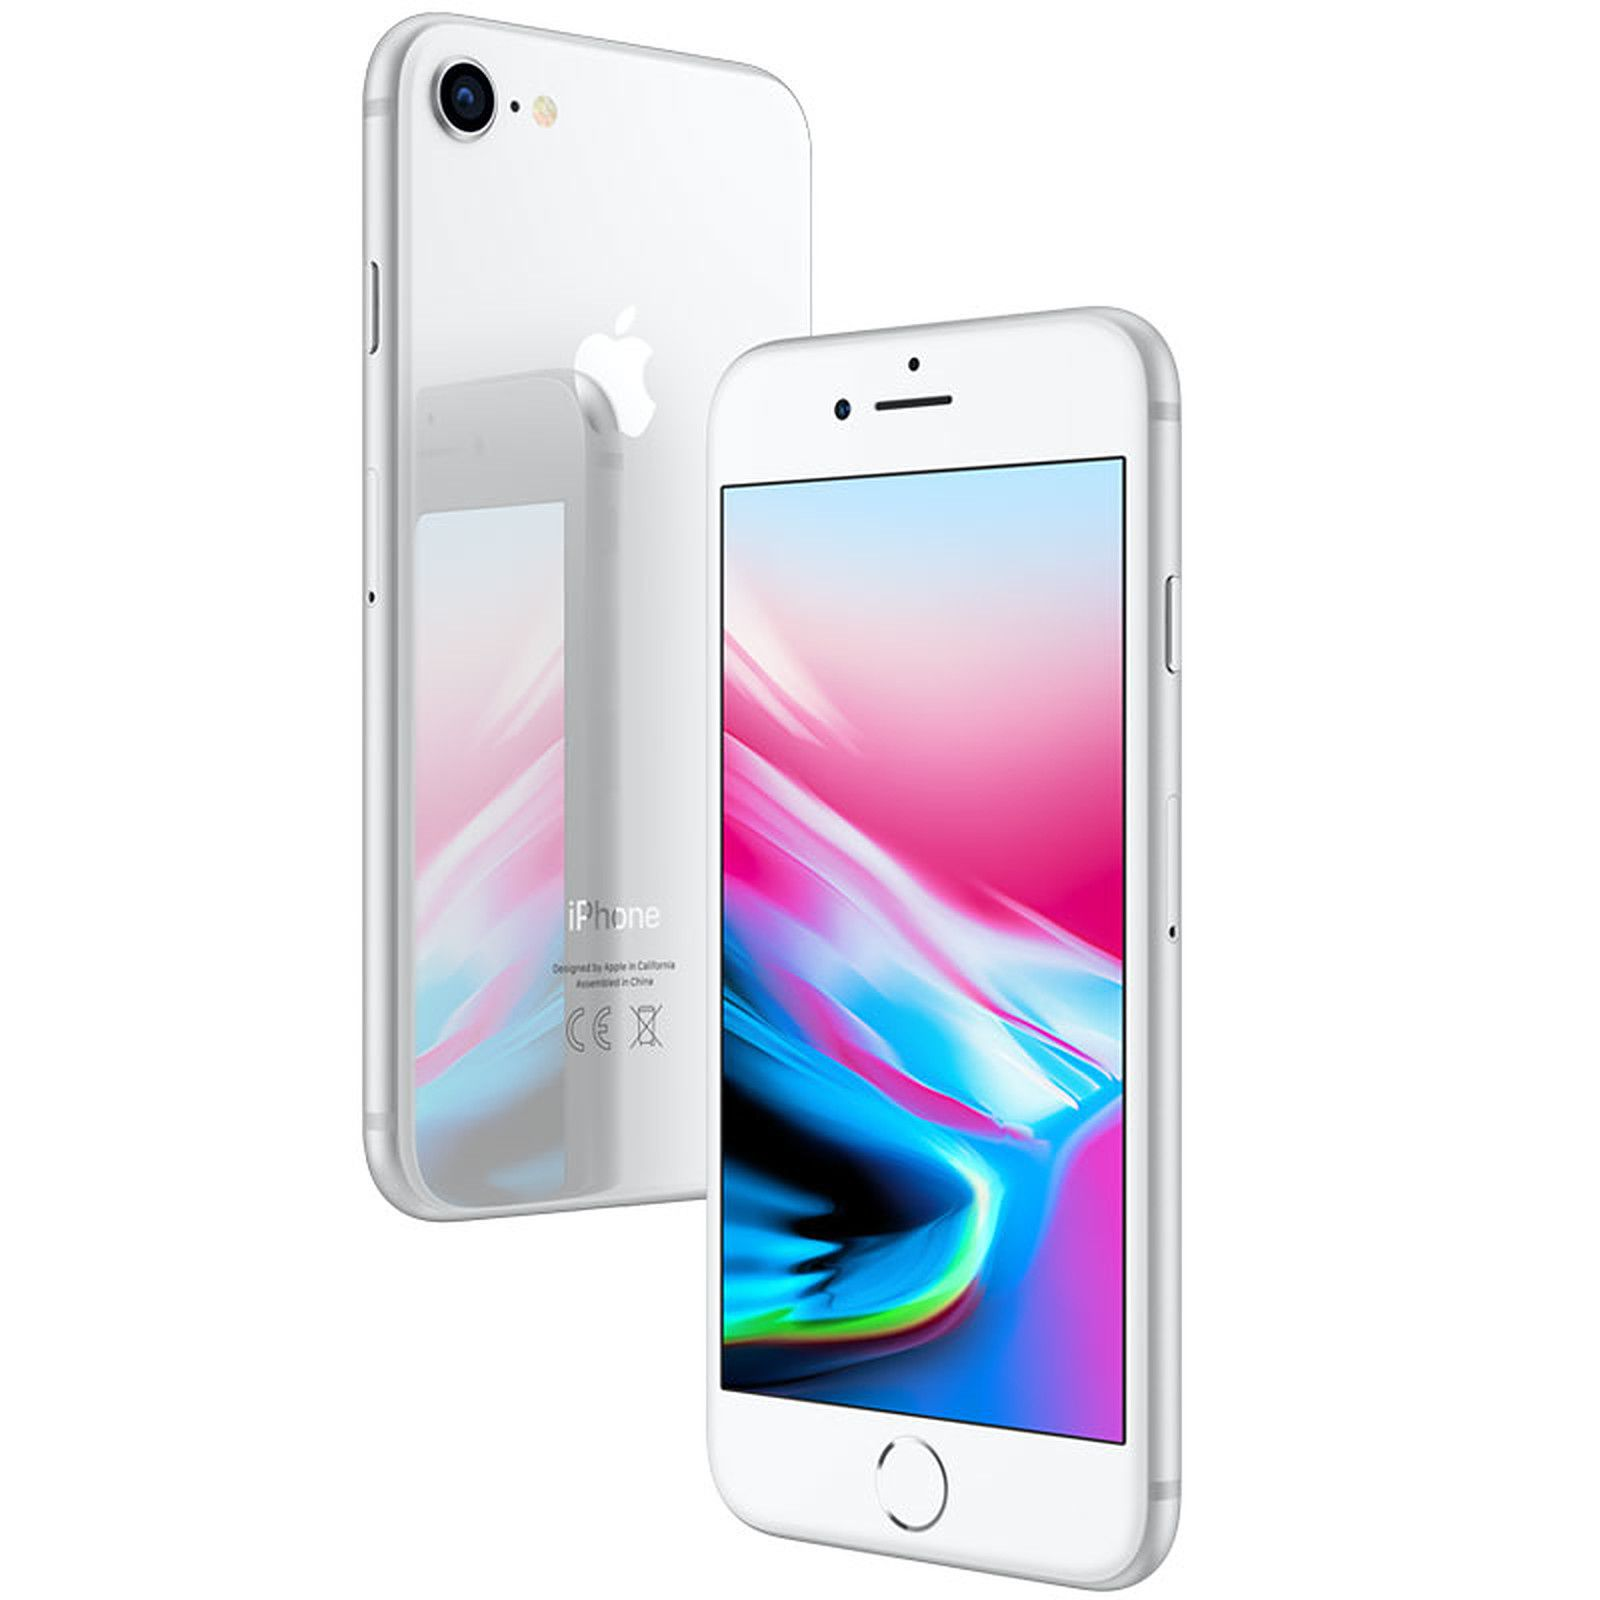 APPLE Silber 8 128 GB iPhone GB REFURBISHED (*) 128